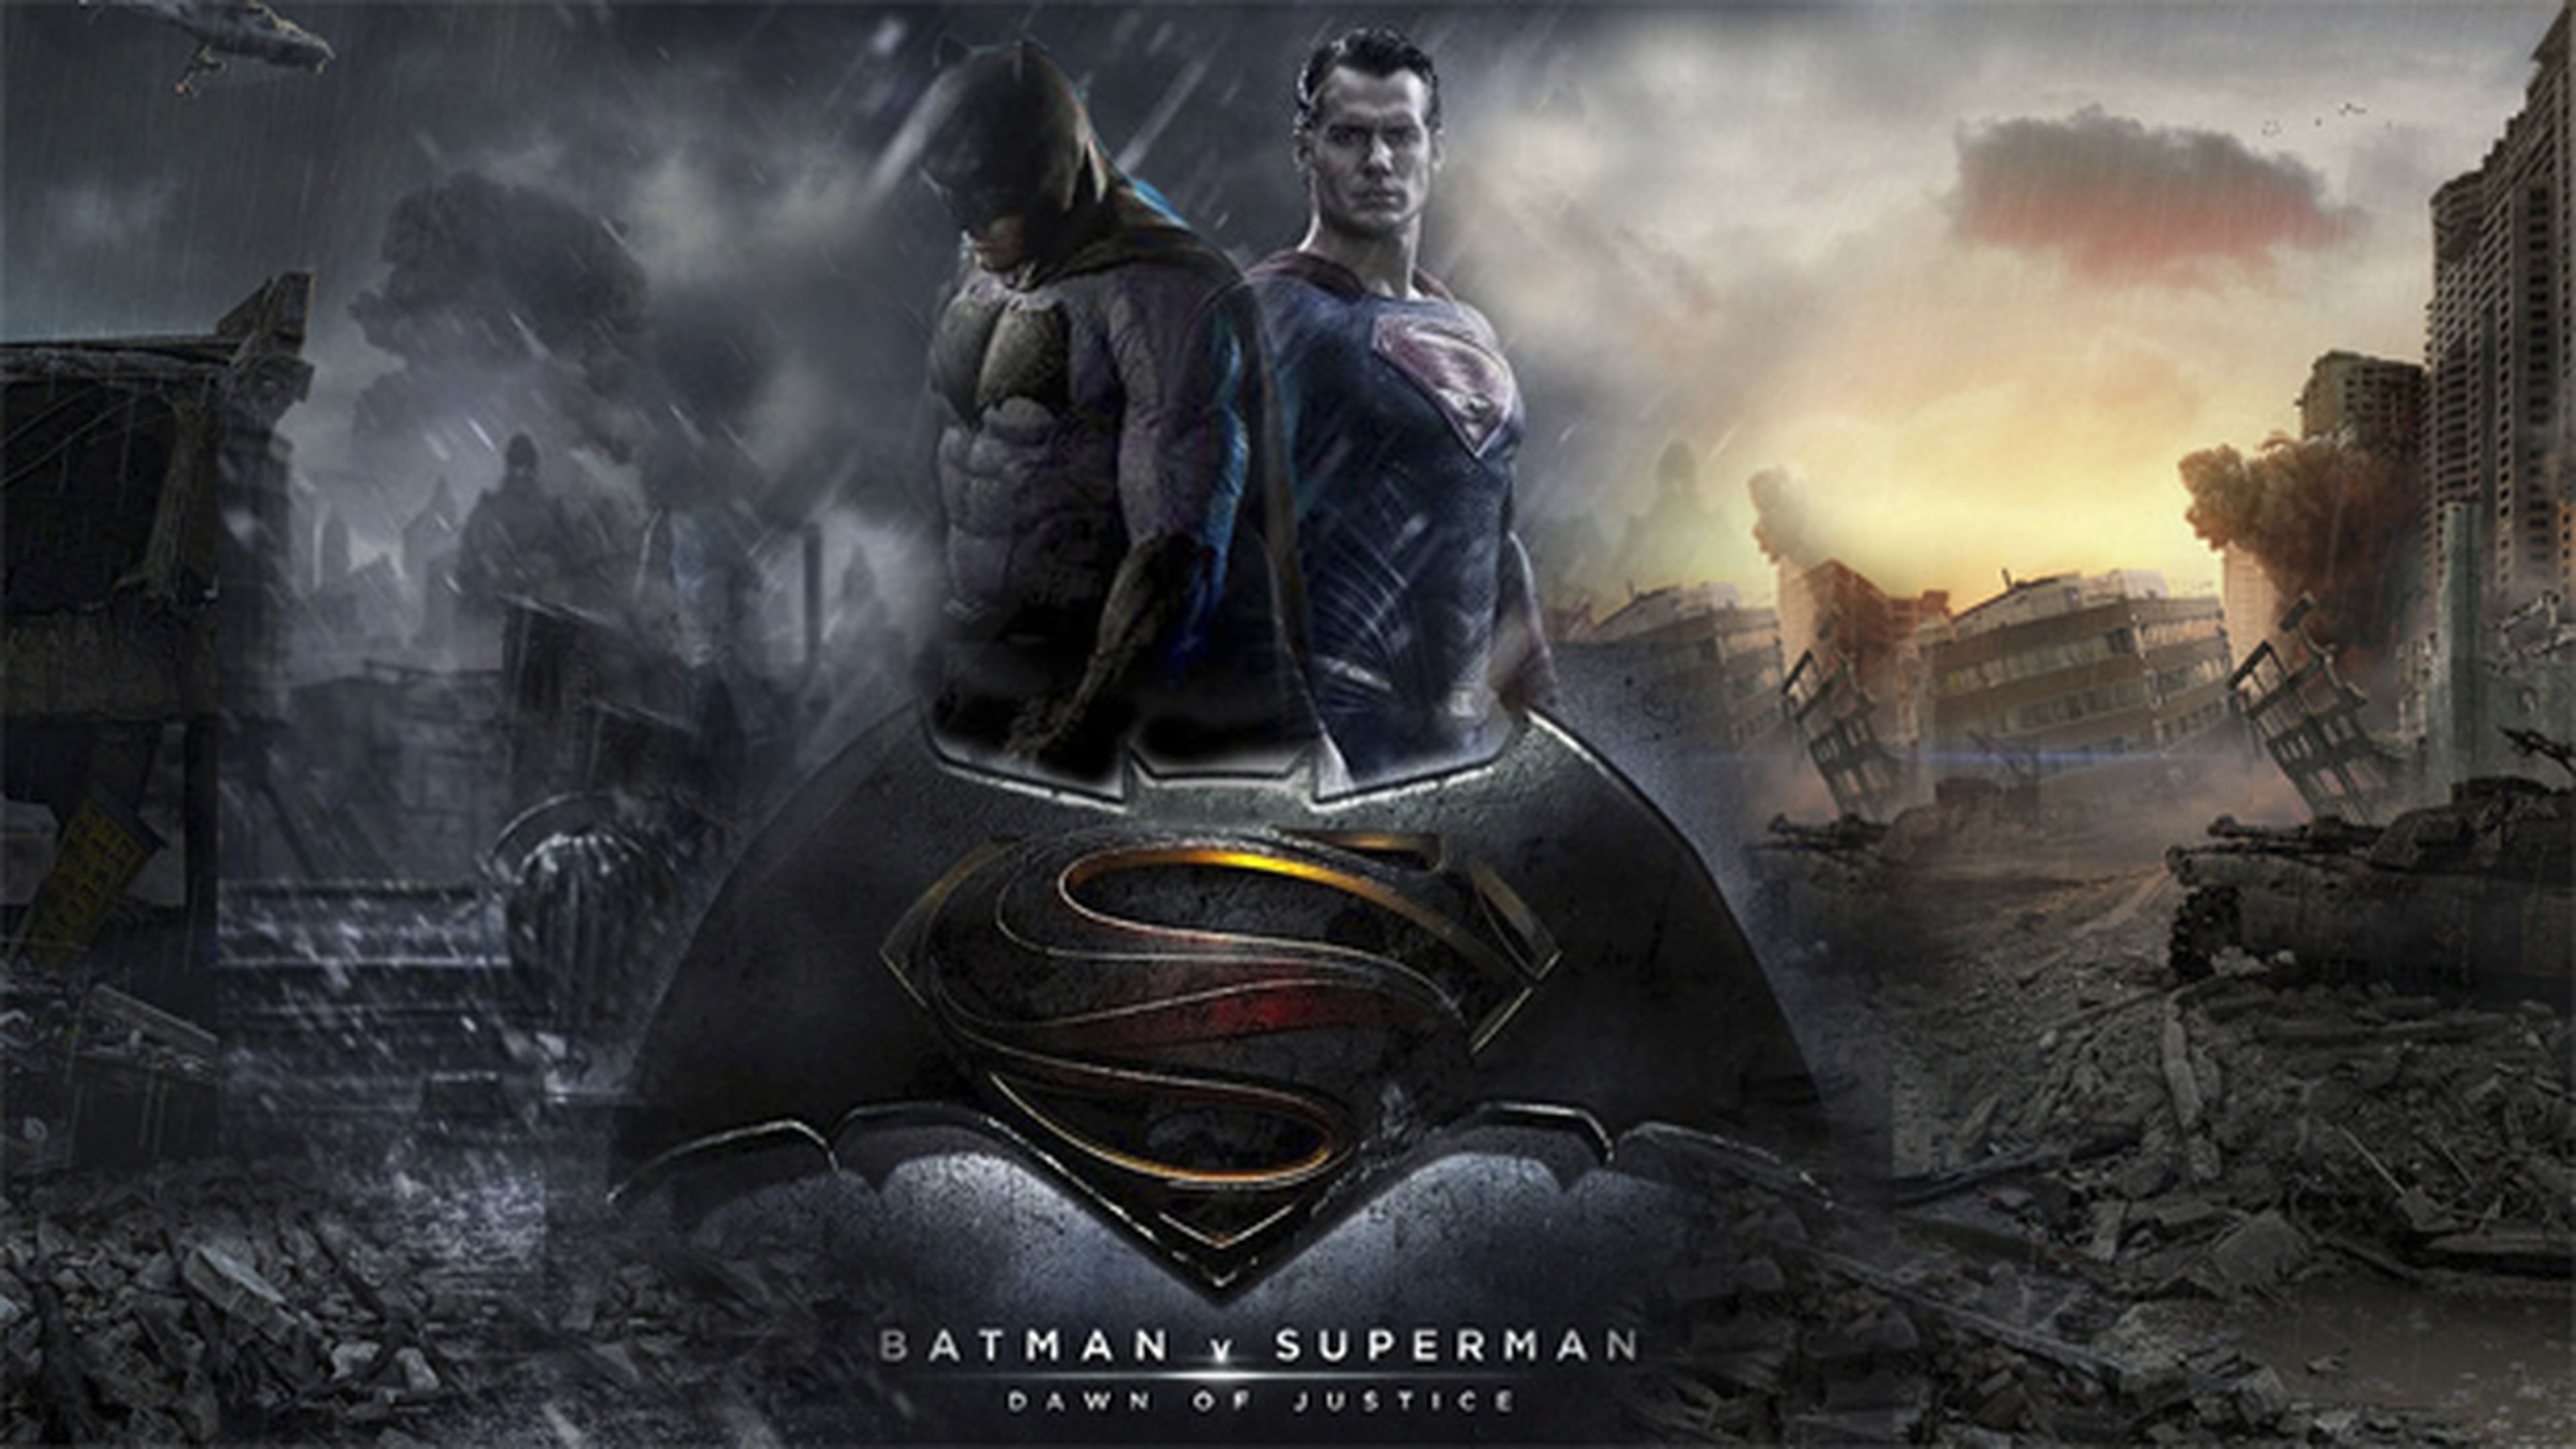 Batman v Superman hará historia según ha expresado Henry Cavill